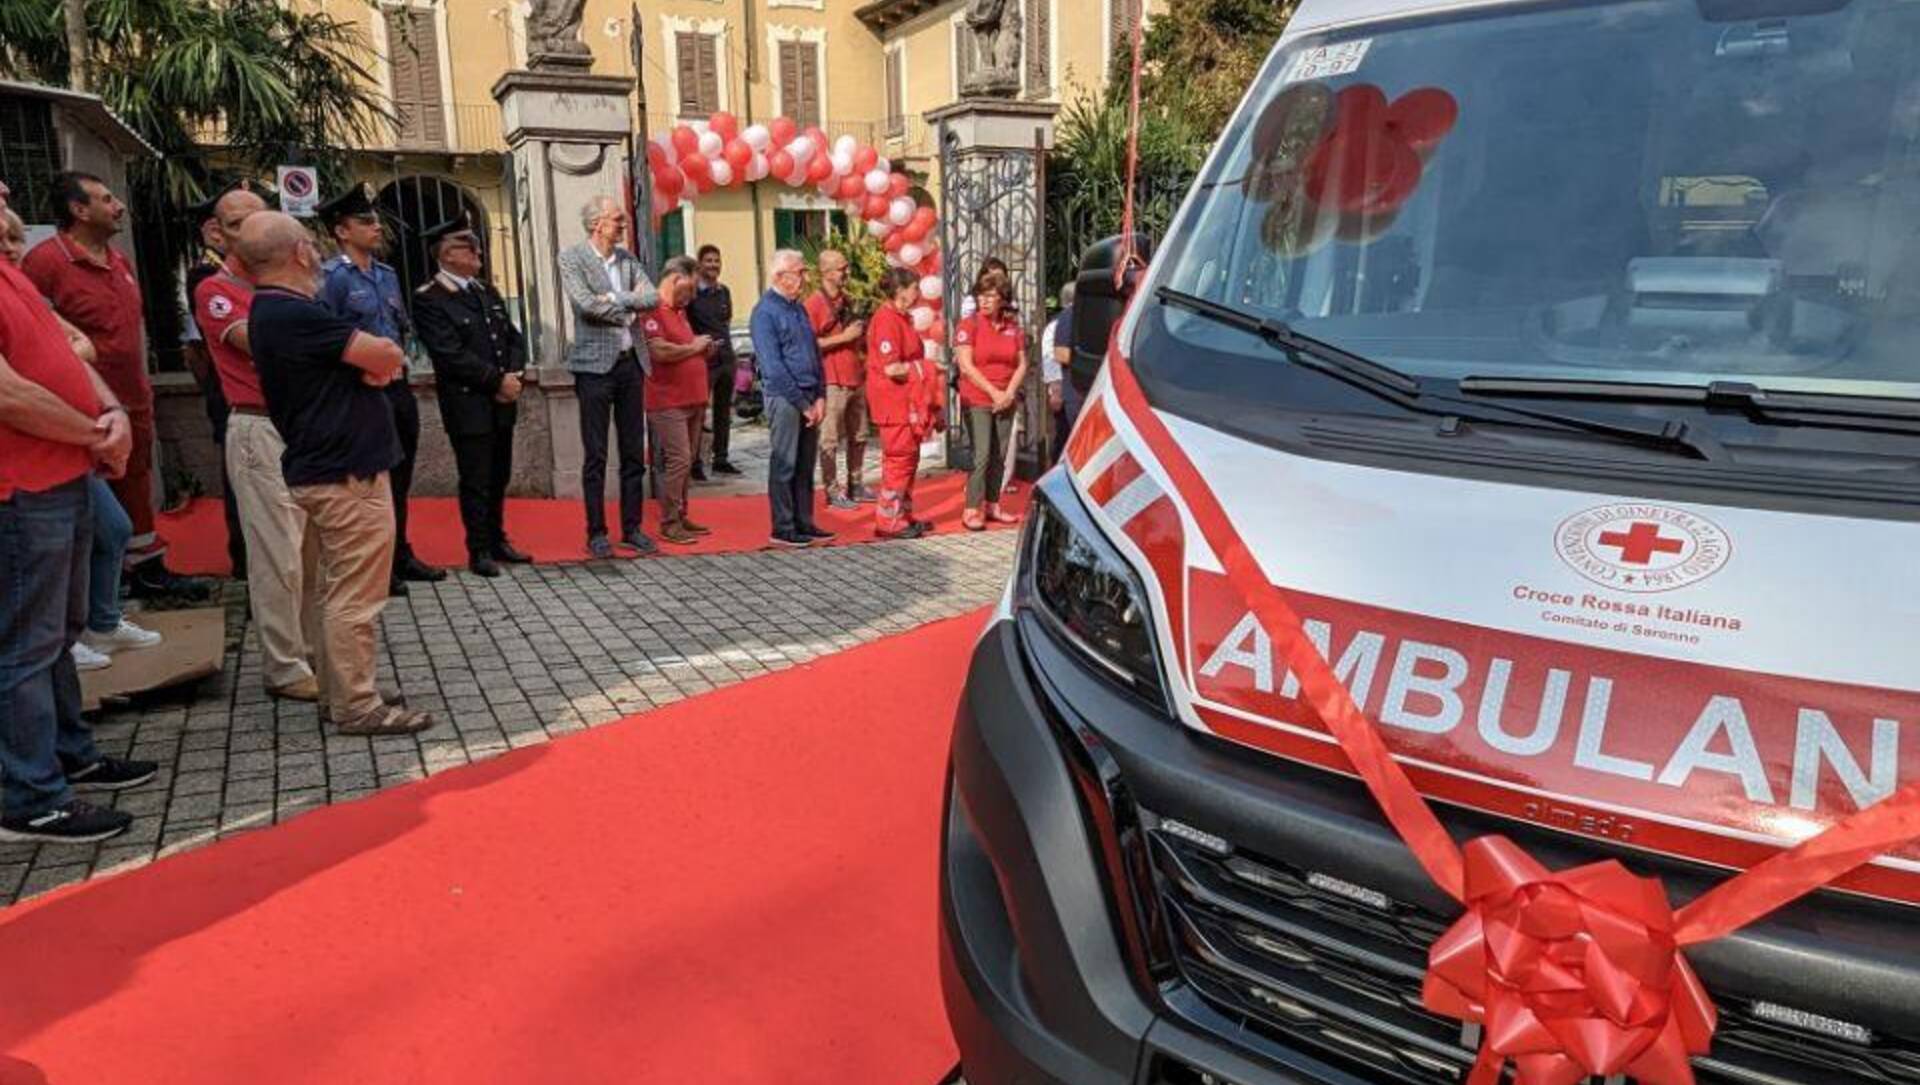 Saronno, inaugurata la nuova ambulanza della Croce Rossa con una dedica ai cittadini che hanno donato